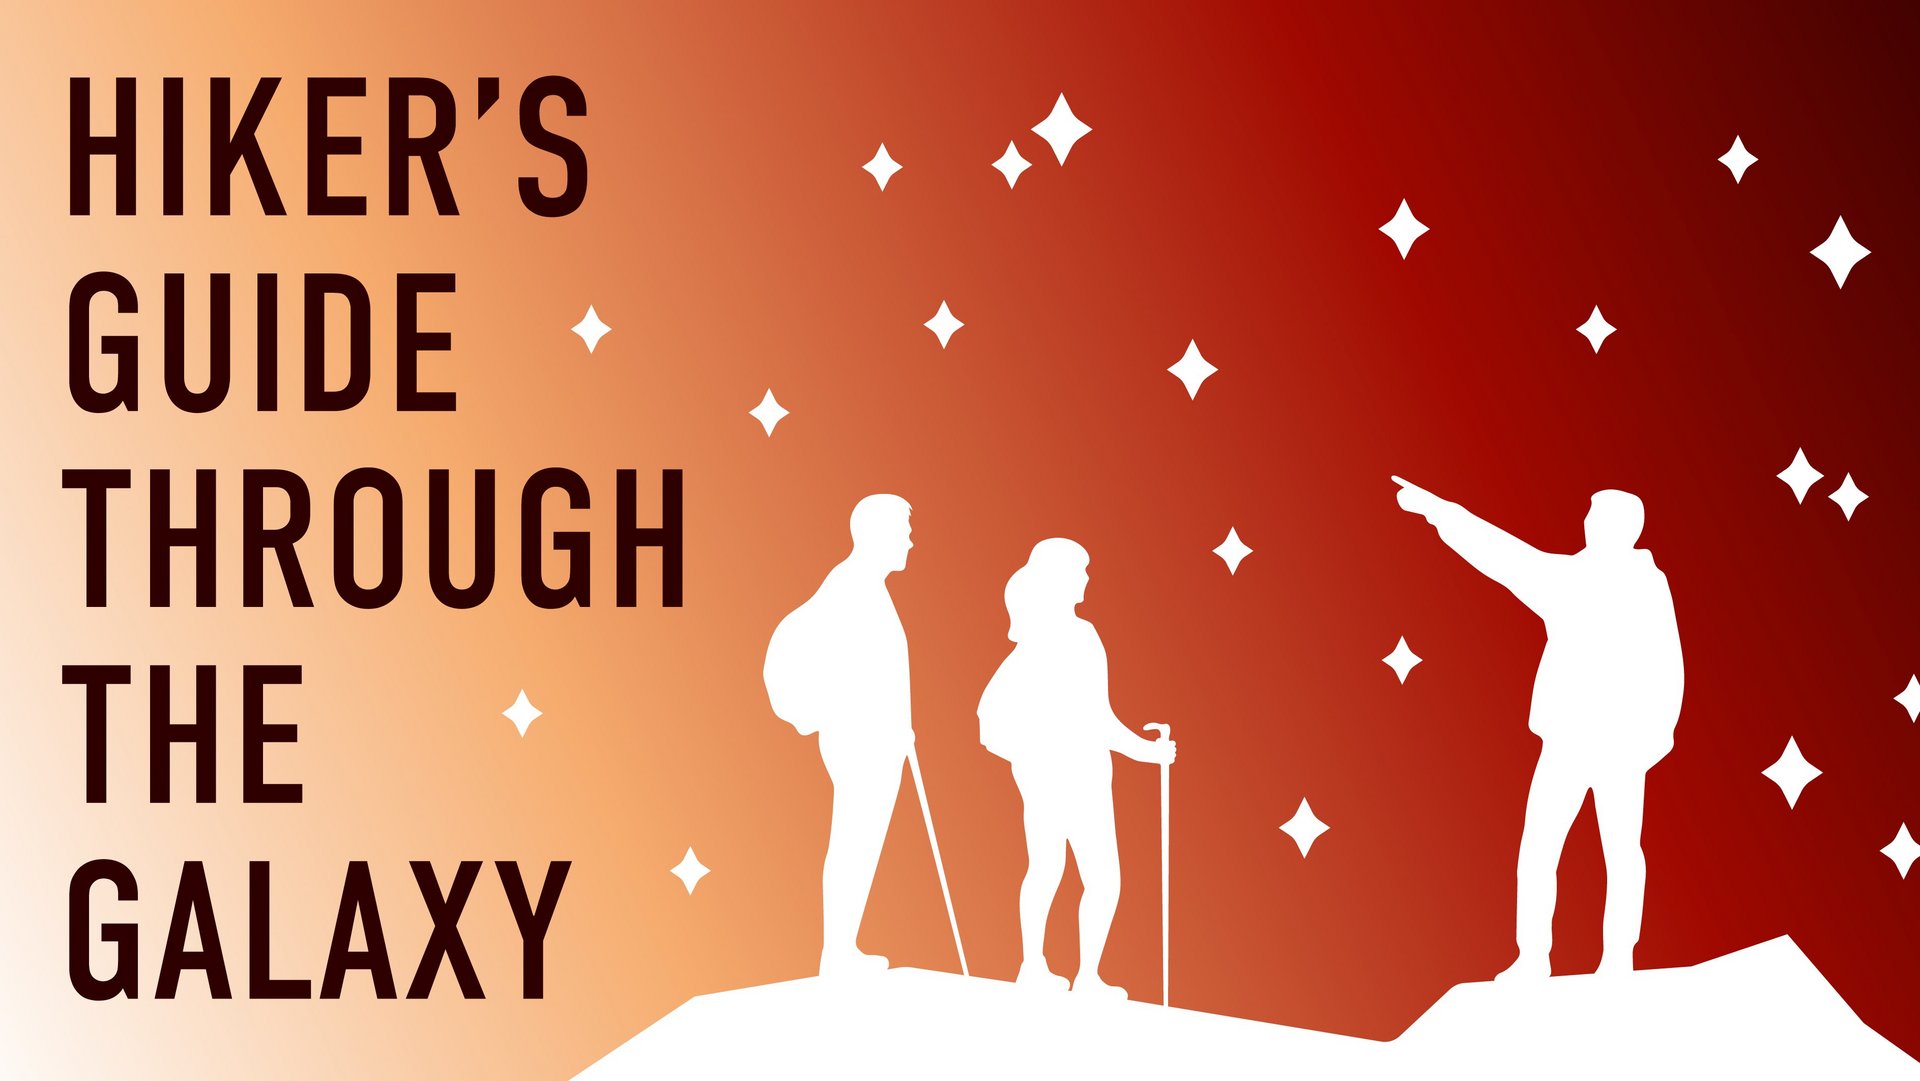 Logo Hiker's Guide: Grafik von drei Menschen, die vor dem Nachthimmel stehen. Links steht der Schriftzug "HIKER'S GUIDE THROUGH THE GALAXY"